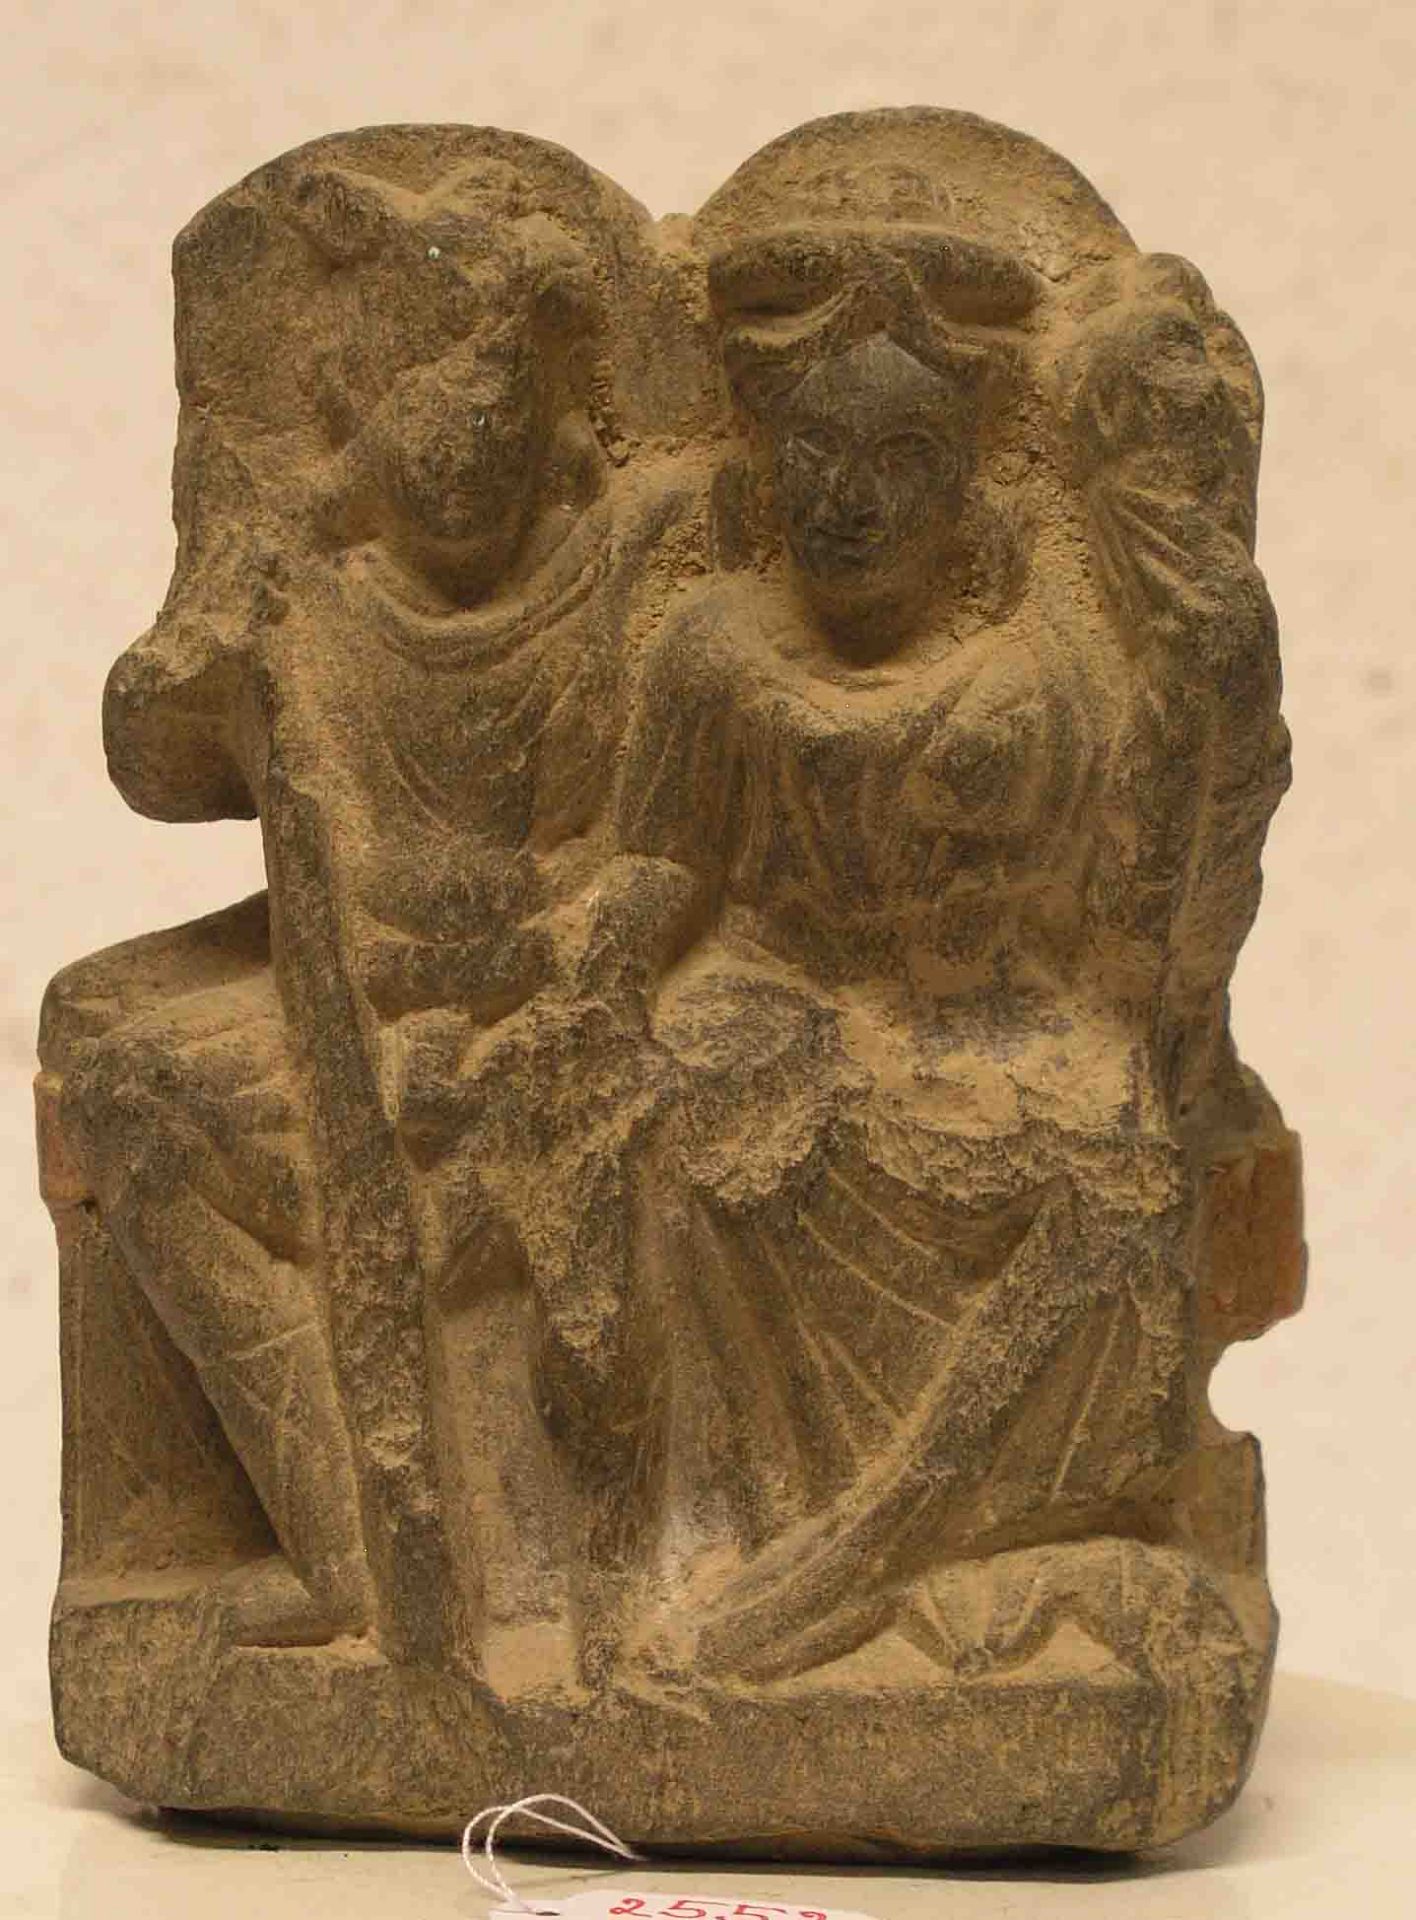 Artefakt. Figürliches Steinfragment. Harappa Kultur, wohl 3000 Jahre alt. Pakistan. 15 x